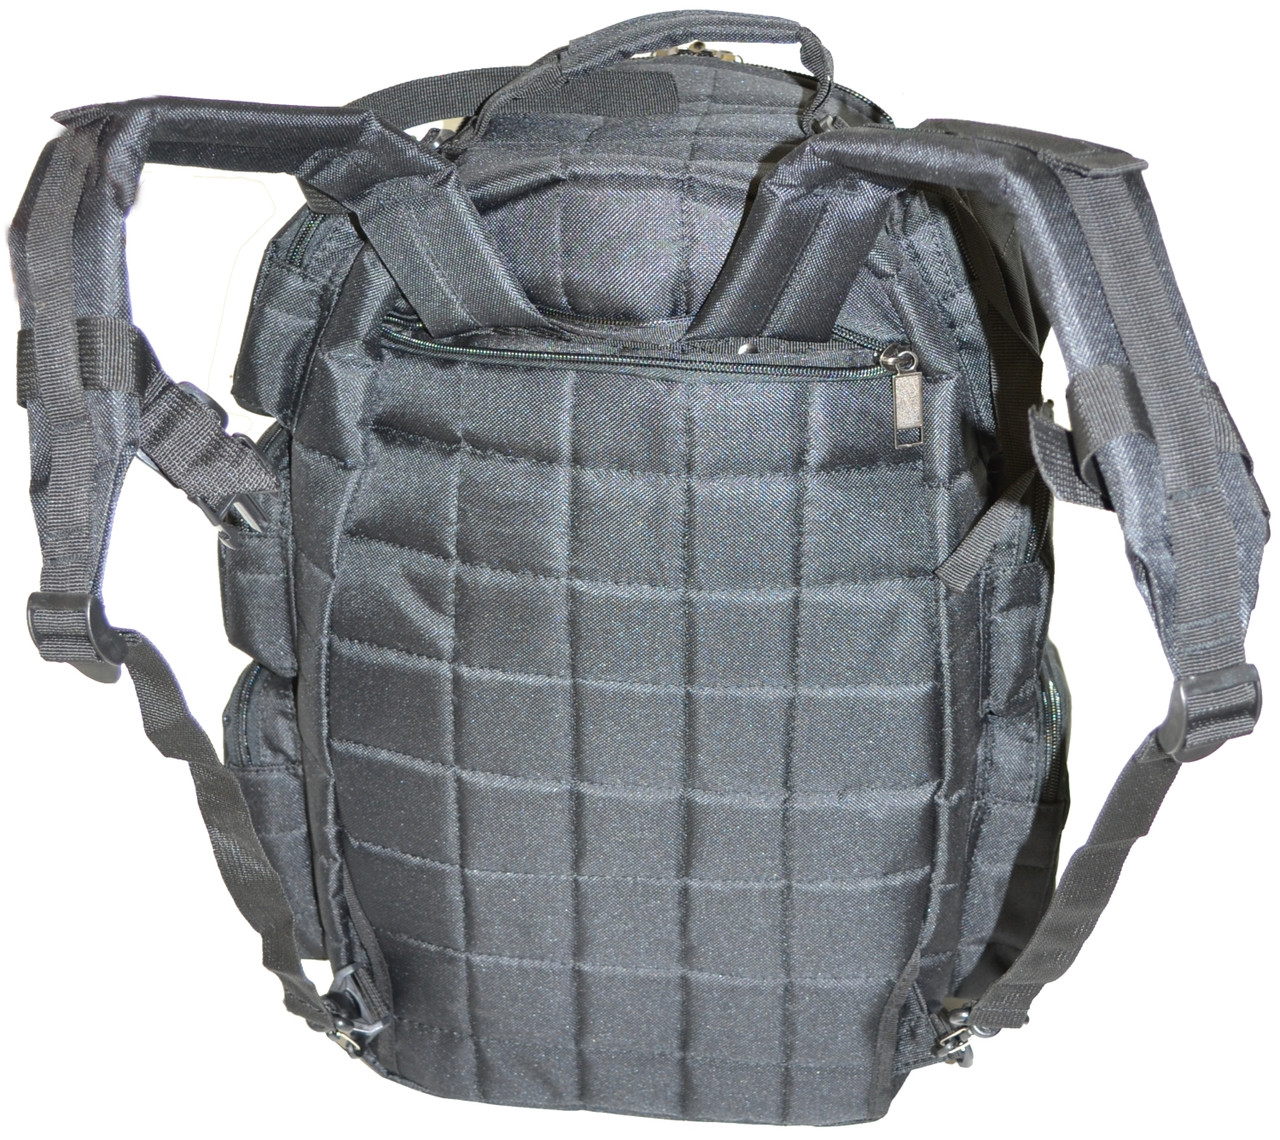 Backpack + Range Bag with Large Padded Deluxe Tactical Divider and 9 Clip Mag Holder - Rangemaster Gear Bag Explorer, Black